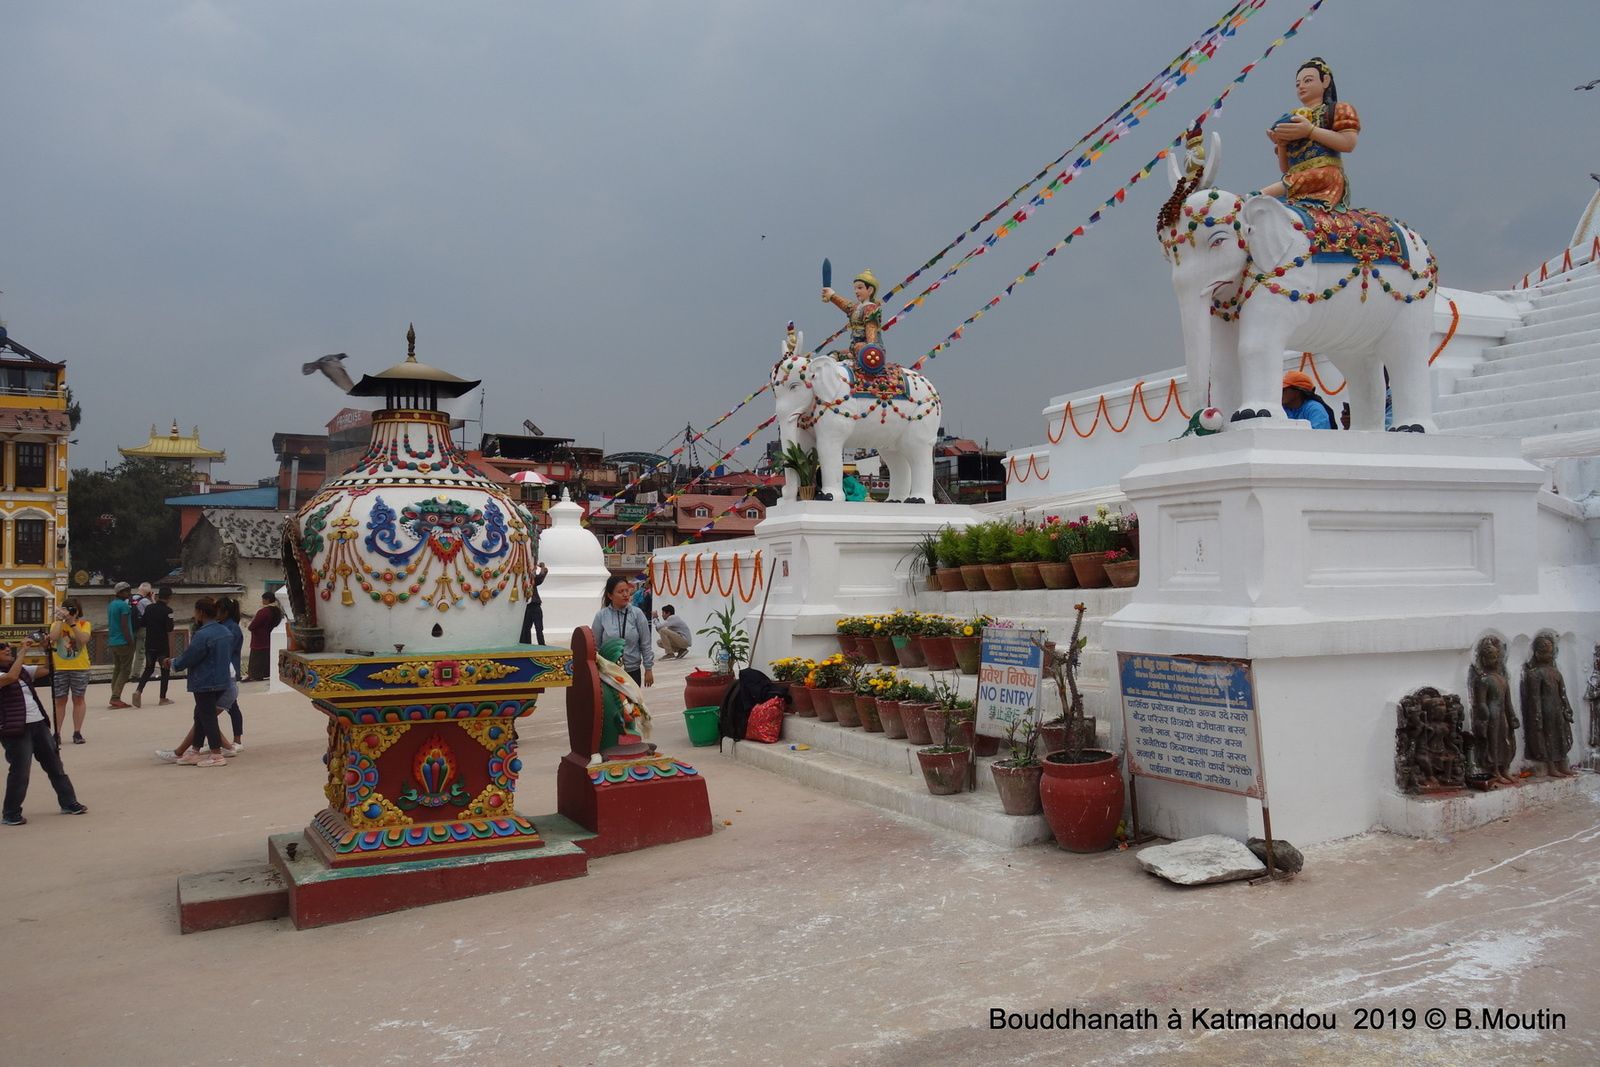 Bouddhanath à Katmandou (14 photos à cliquer)